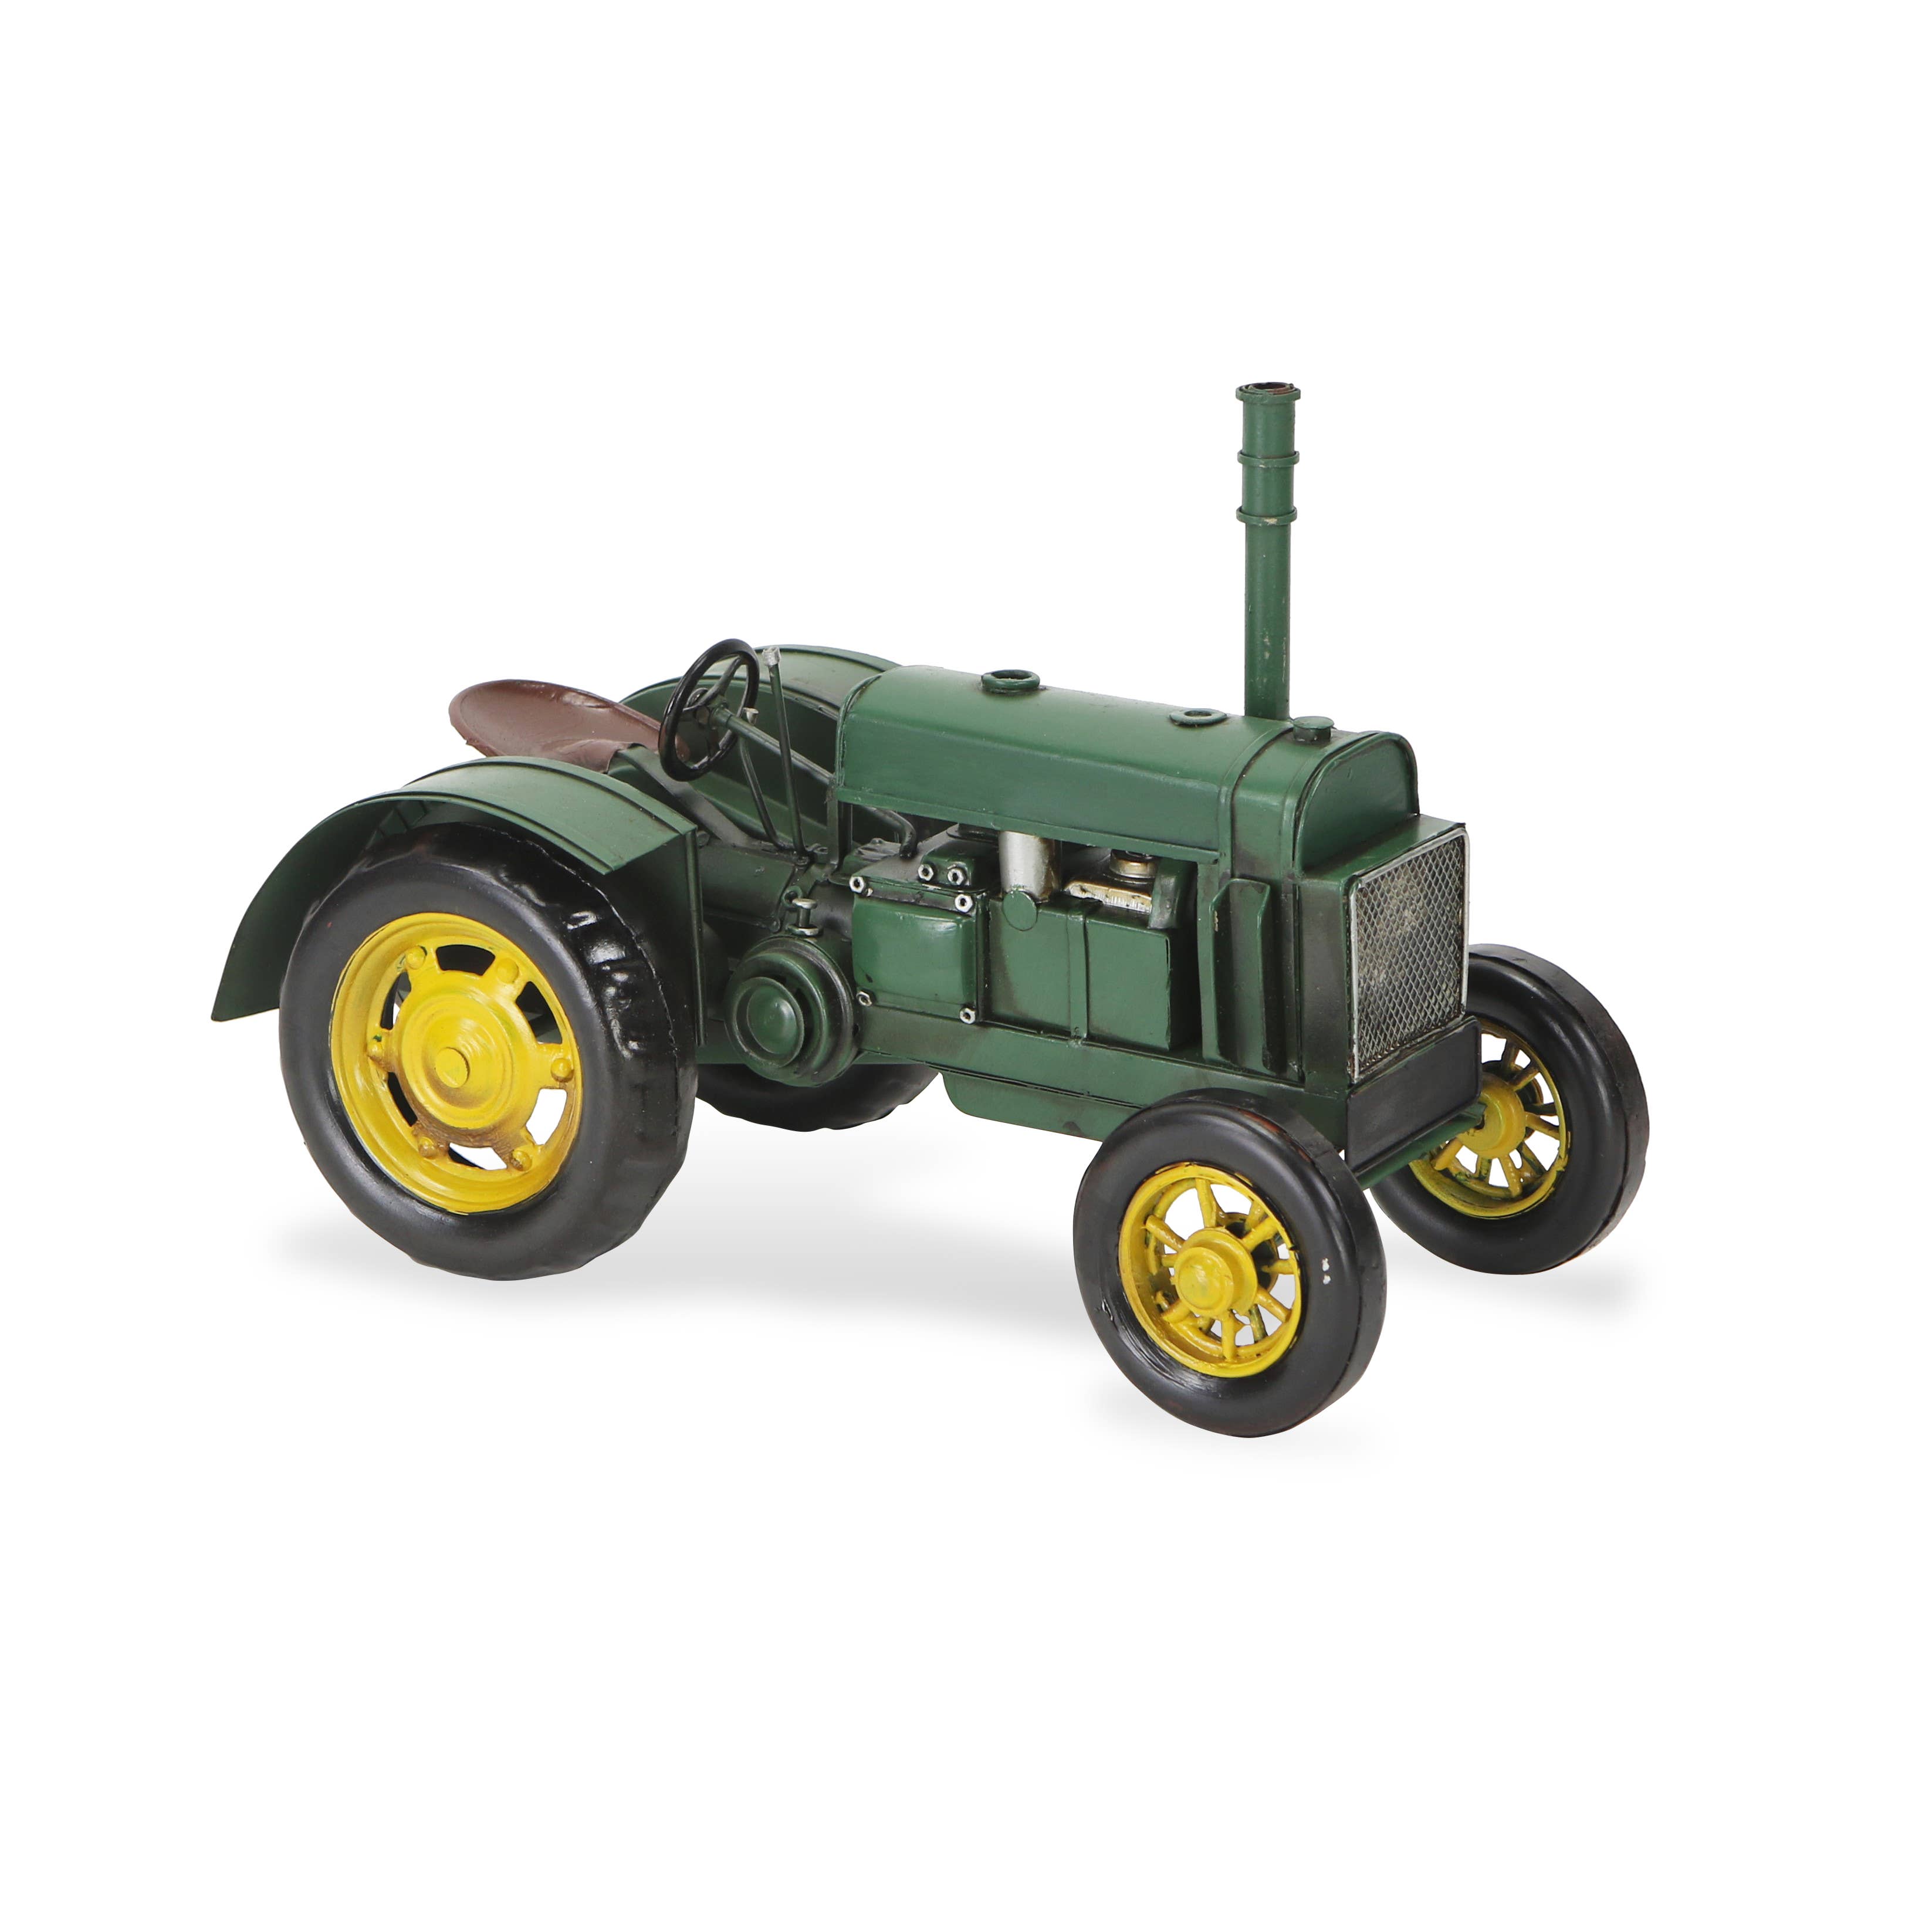 Classic Green Farm Tractor